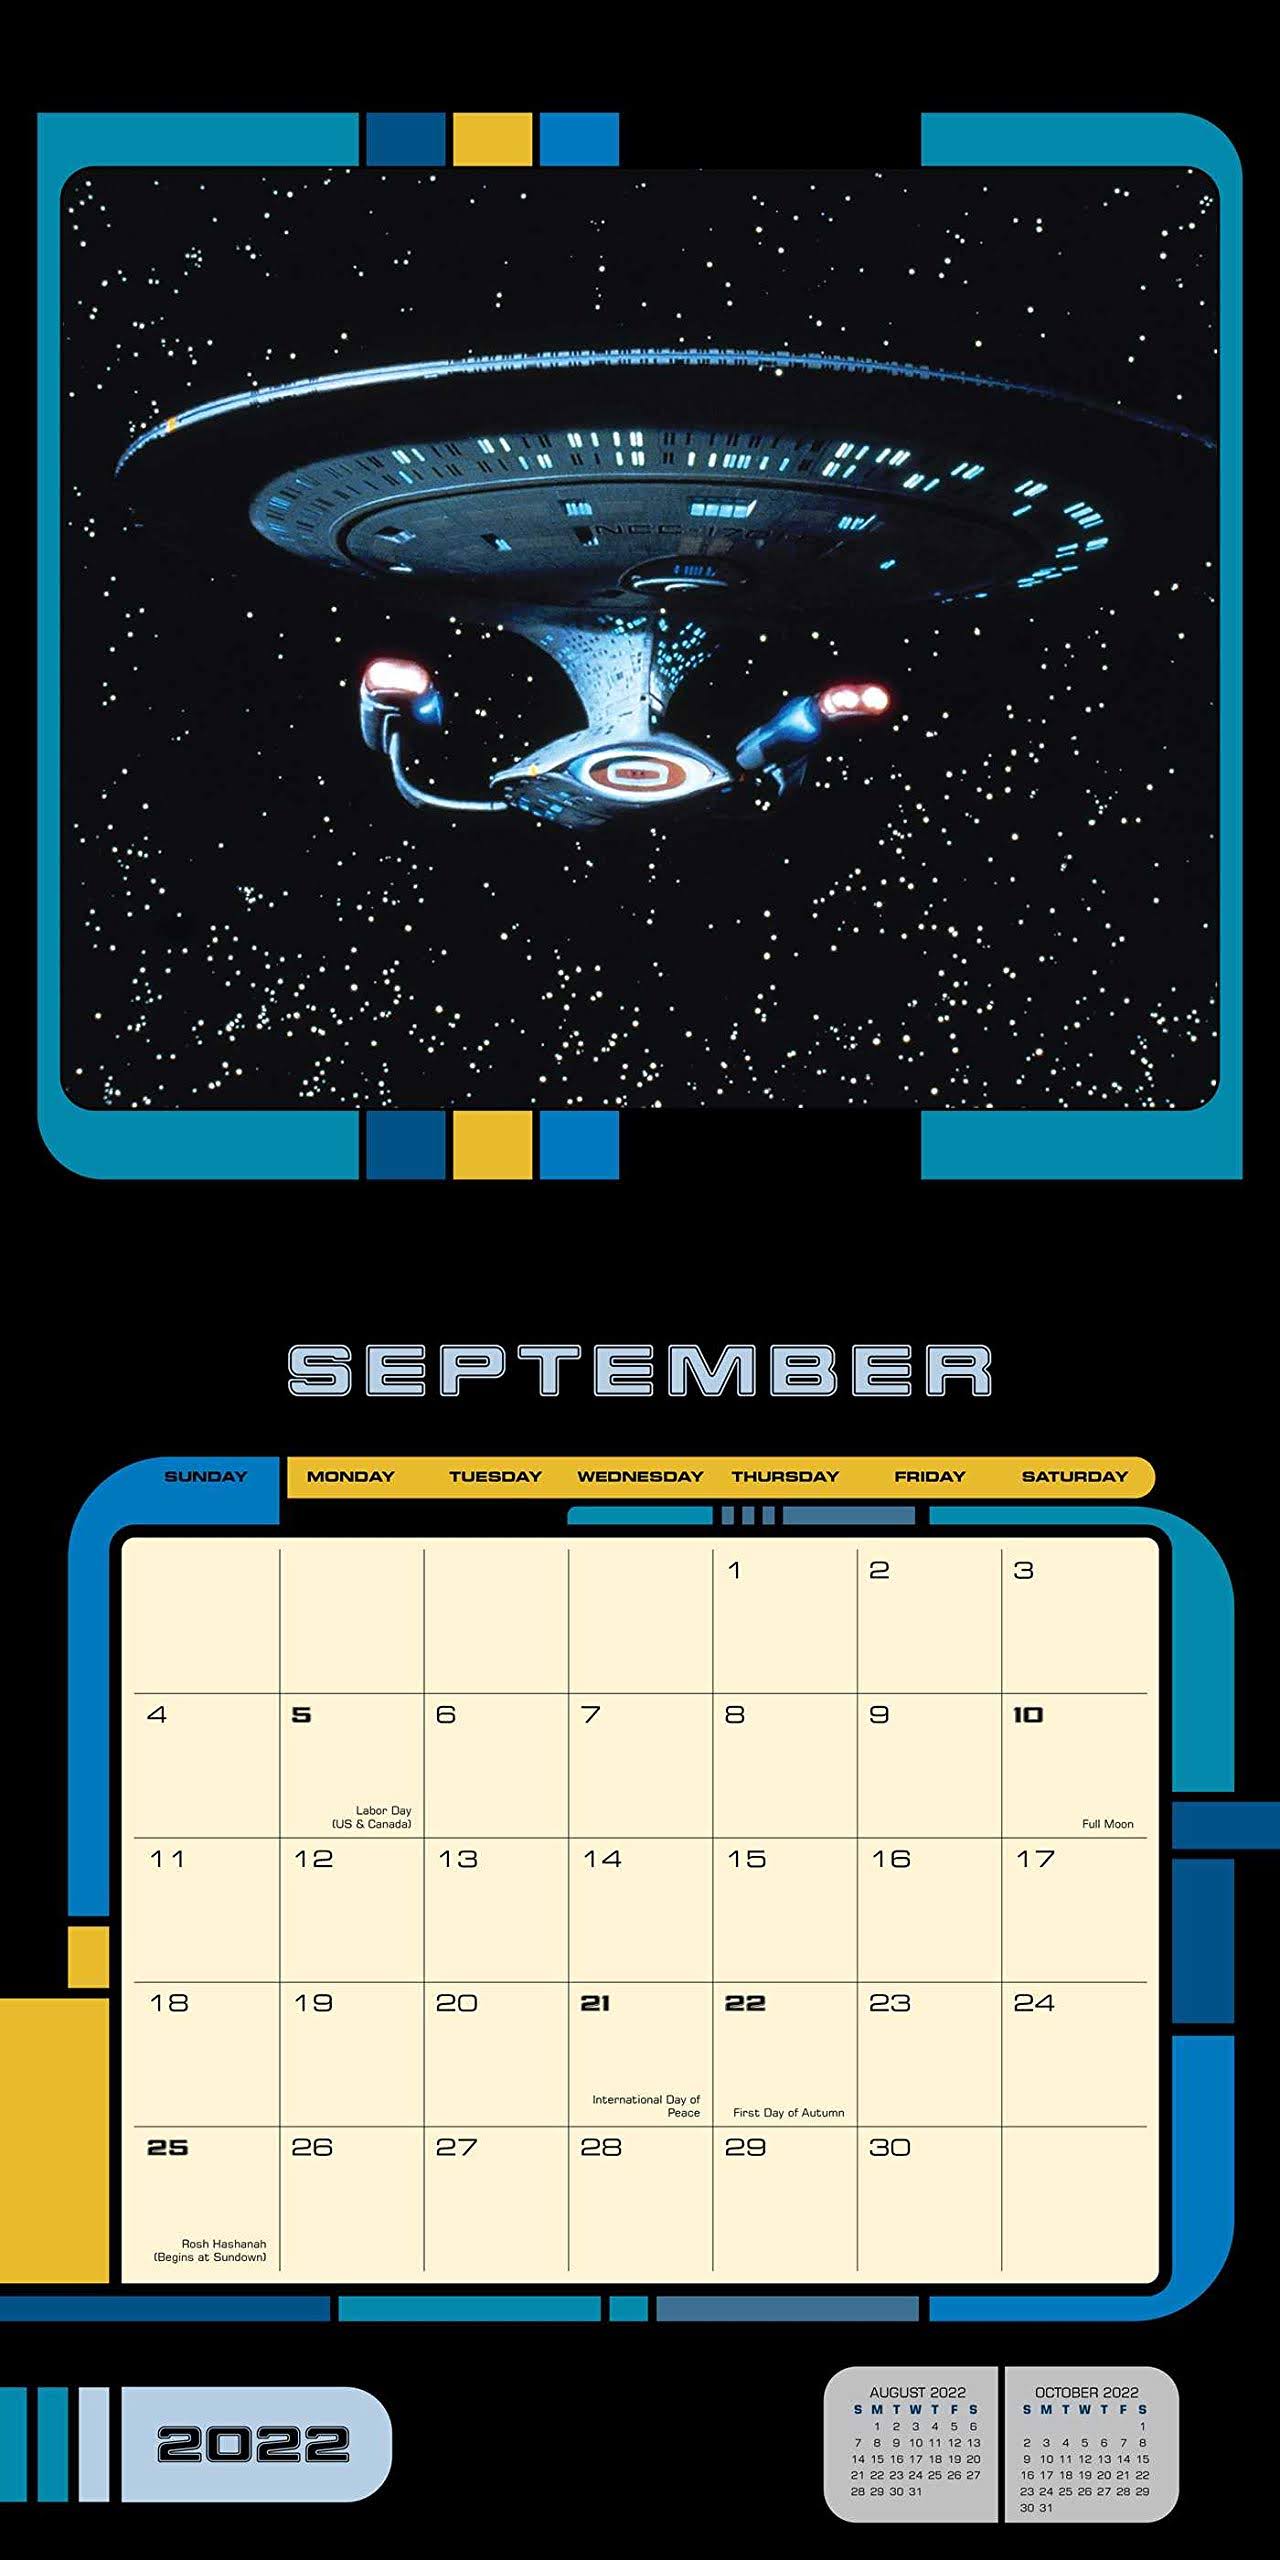 Star Trek Calendar 2022 The Trek Collective: First Look At 2022 Star Trek Calendars